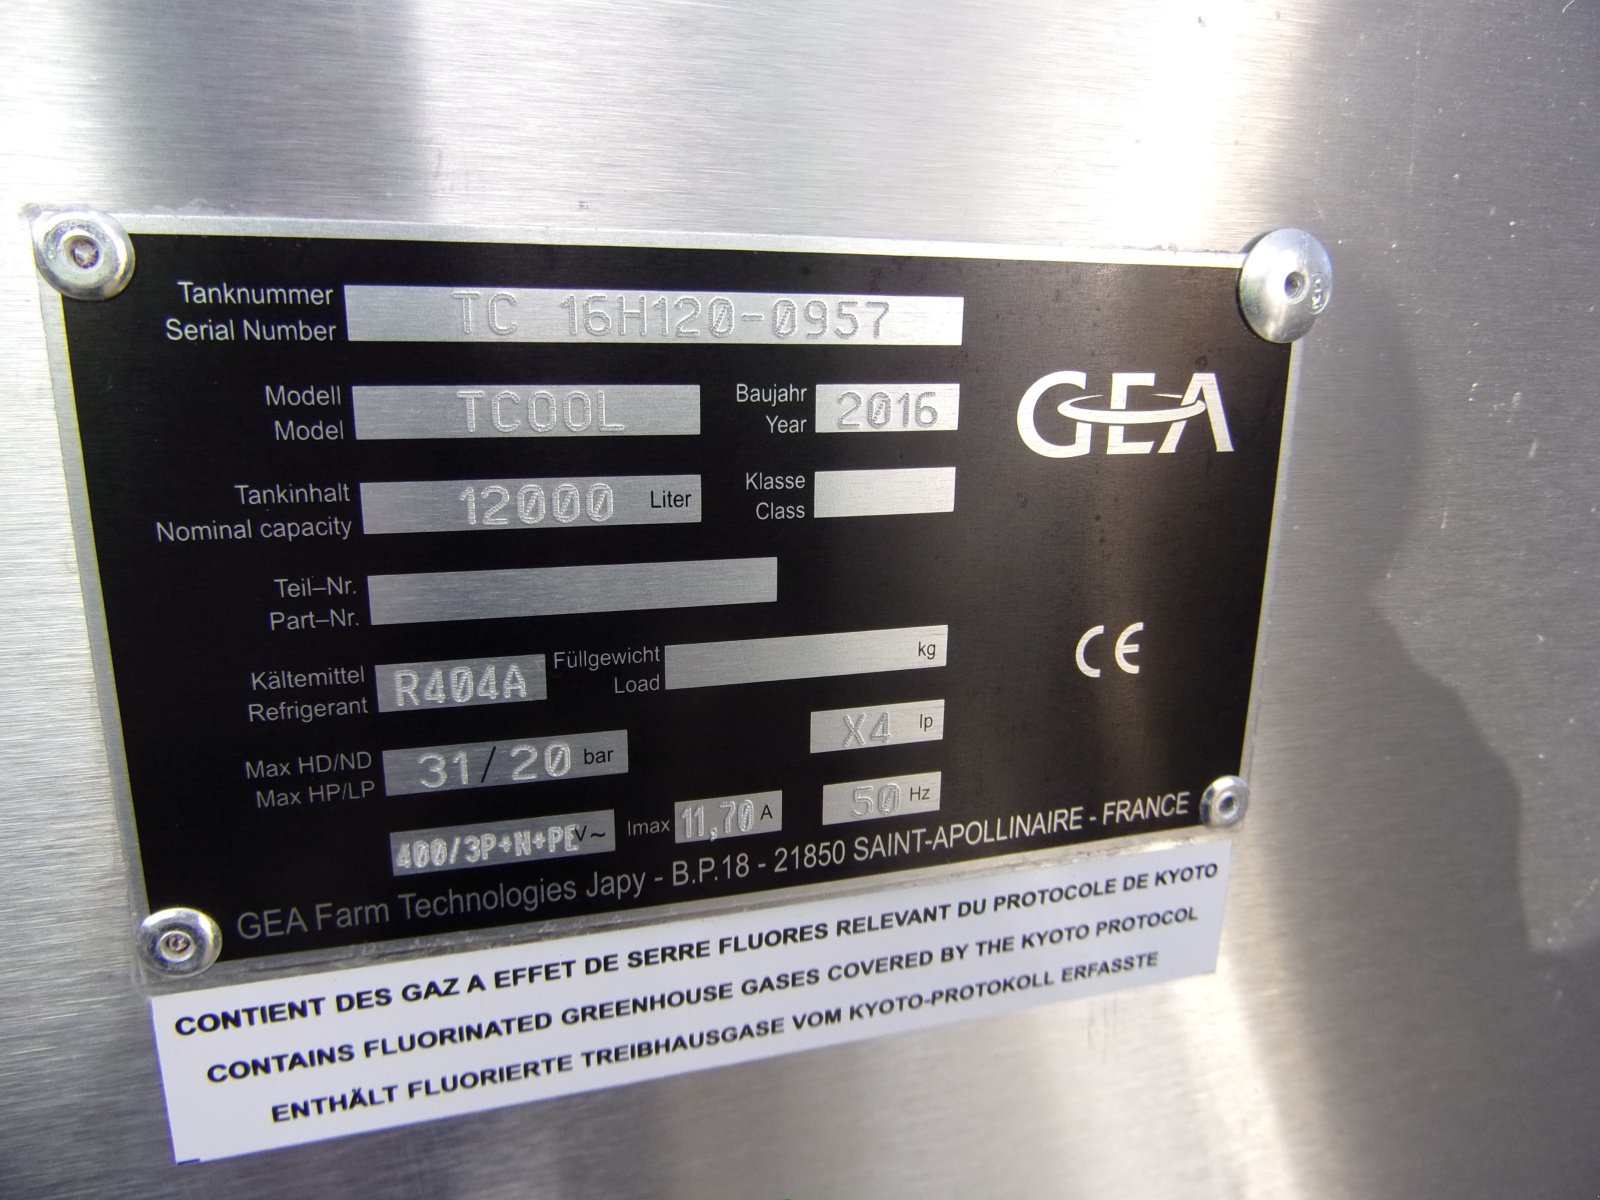 Milchkühltank des Typs GEA T-COOL 12000, Gebrauchtmaschine in Übersee (Bild 6)